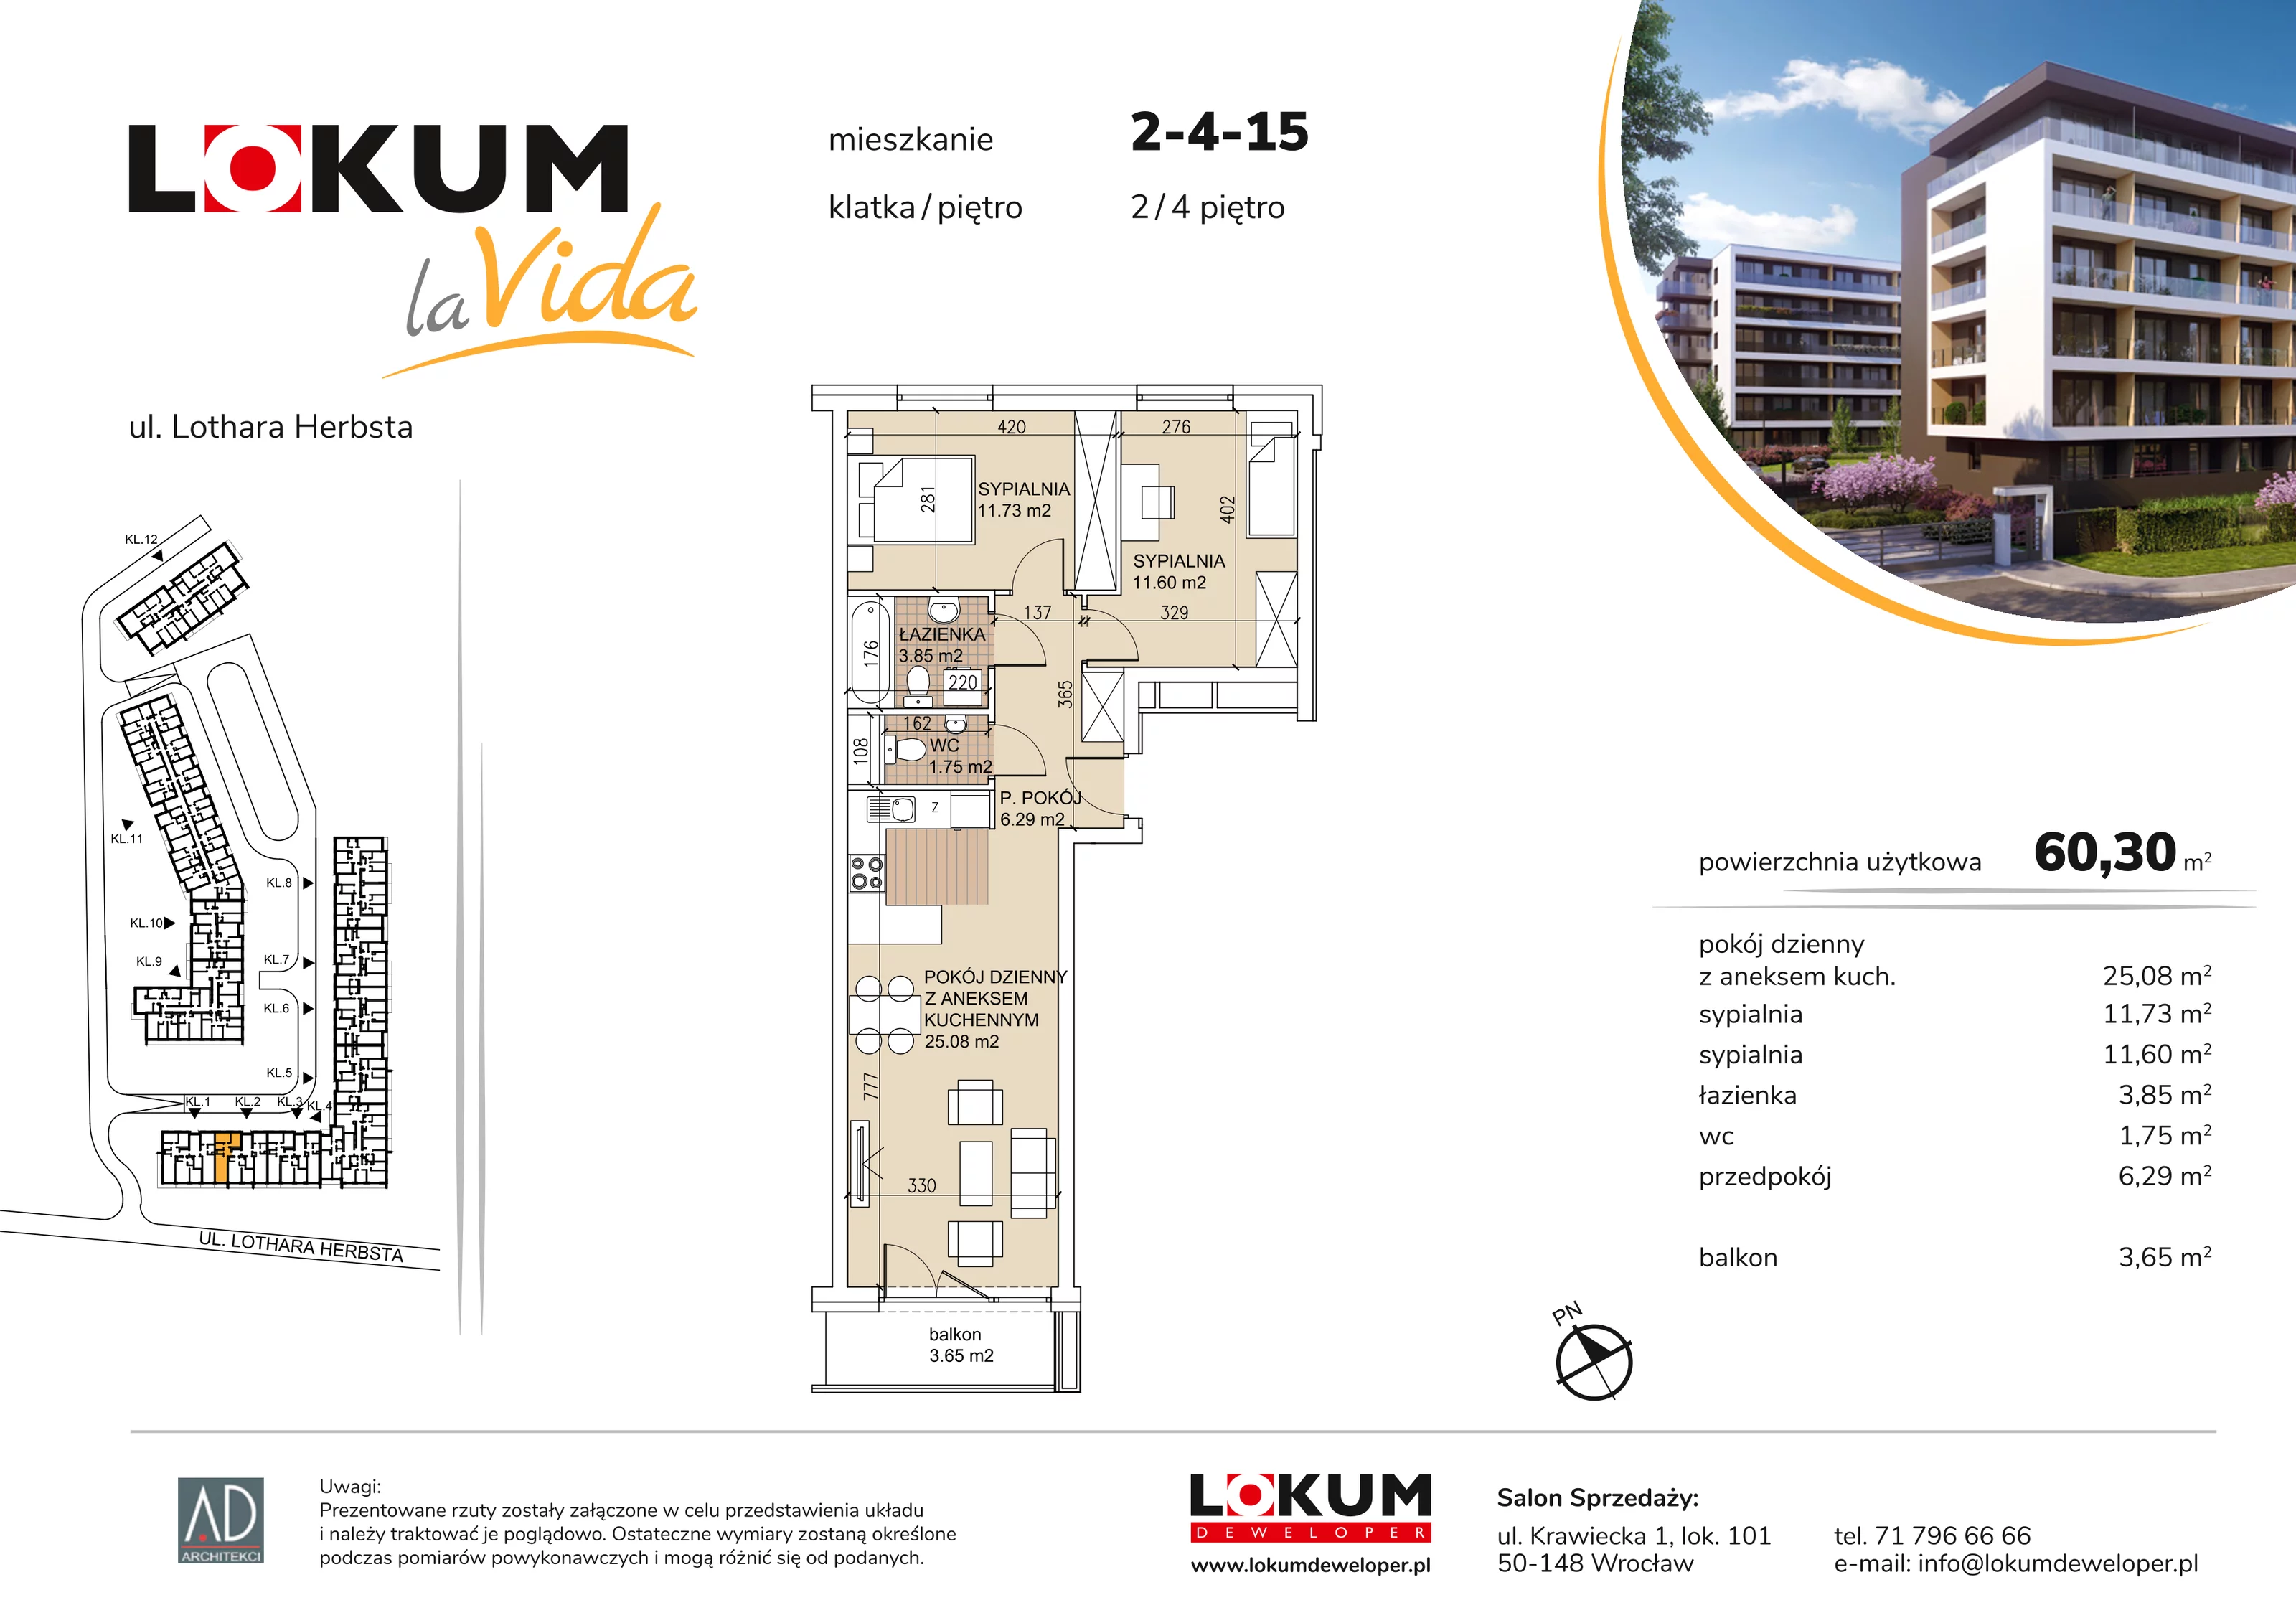 Mieszkanie 60,30 m², piętro 4, oferta nr 2-4-15, Lokum la Vida, Wrocław, Sołtysowice, ul. Lothara Herbsta